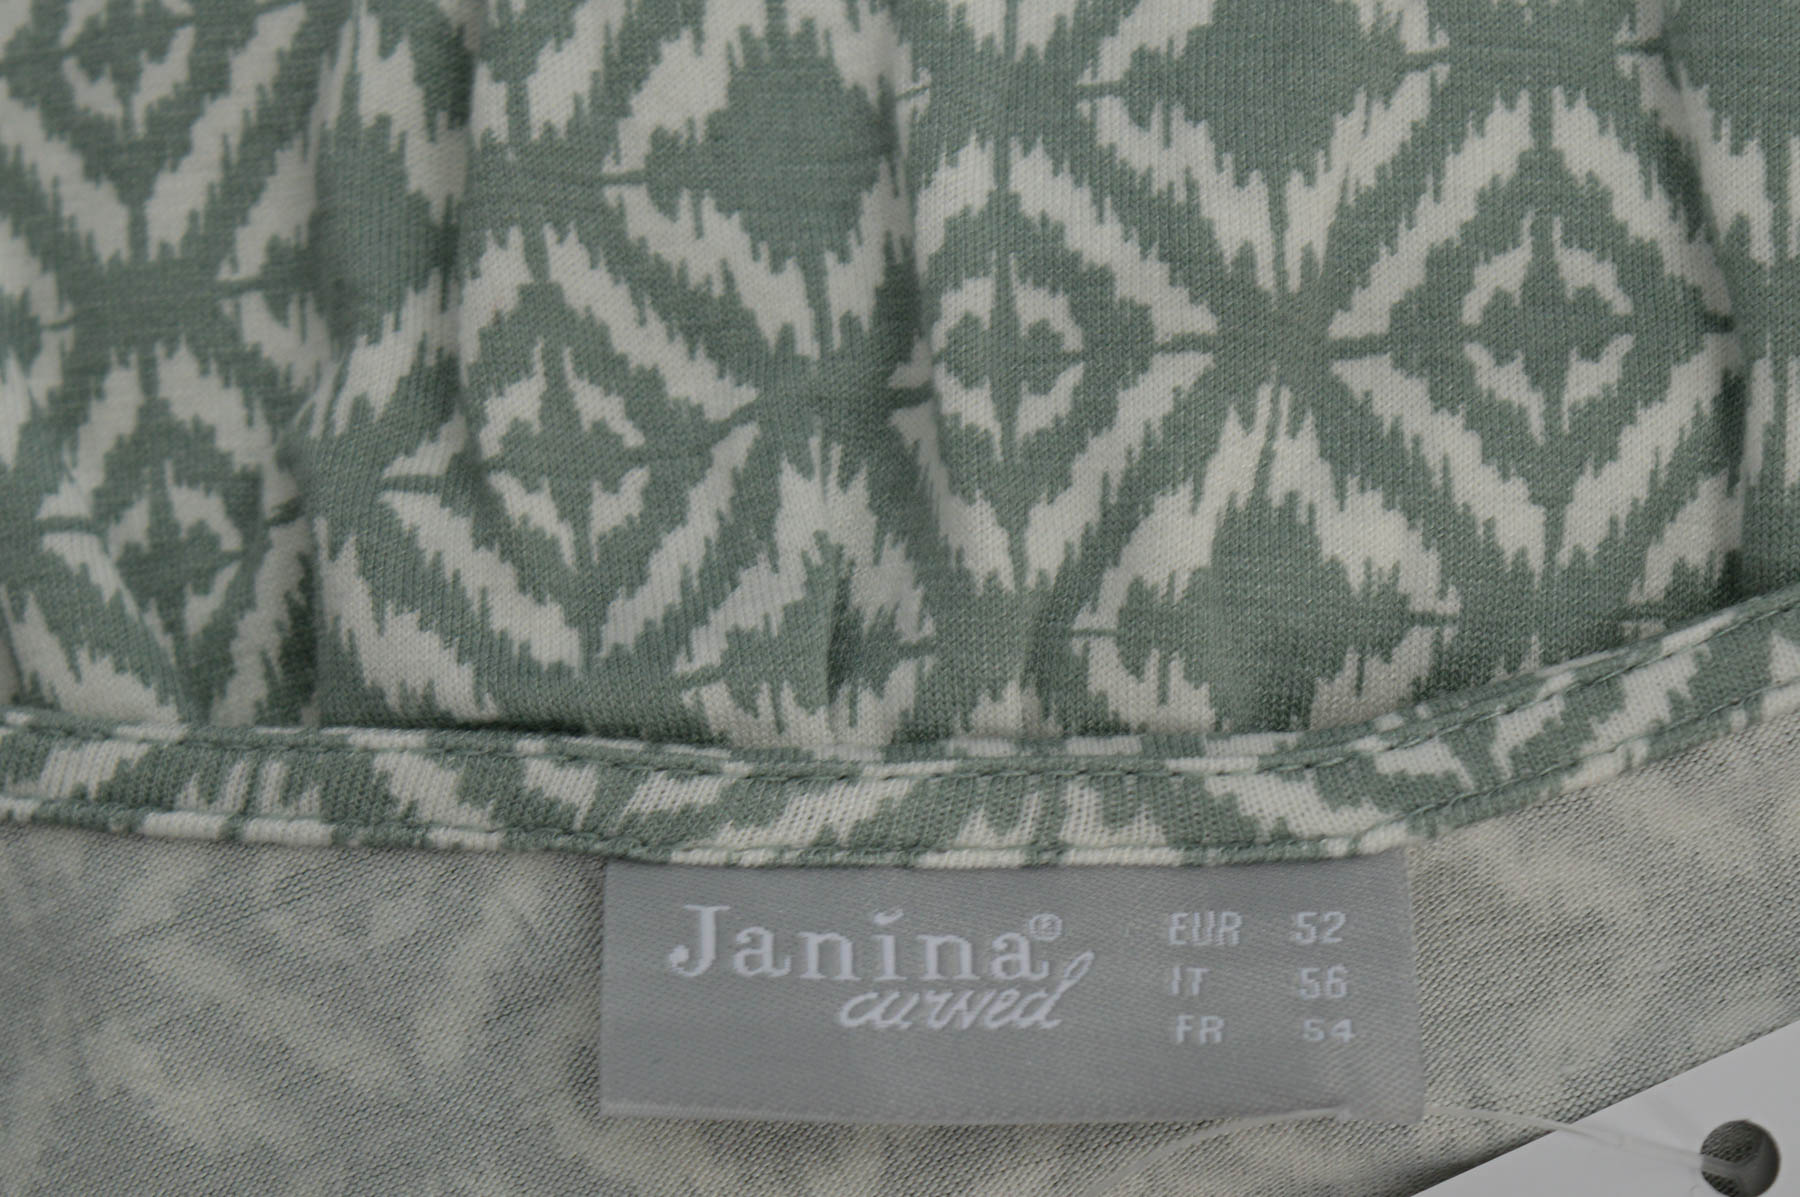 Γυναικείο μπλουζάκι - Janina - 2